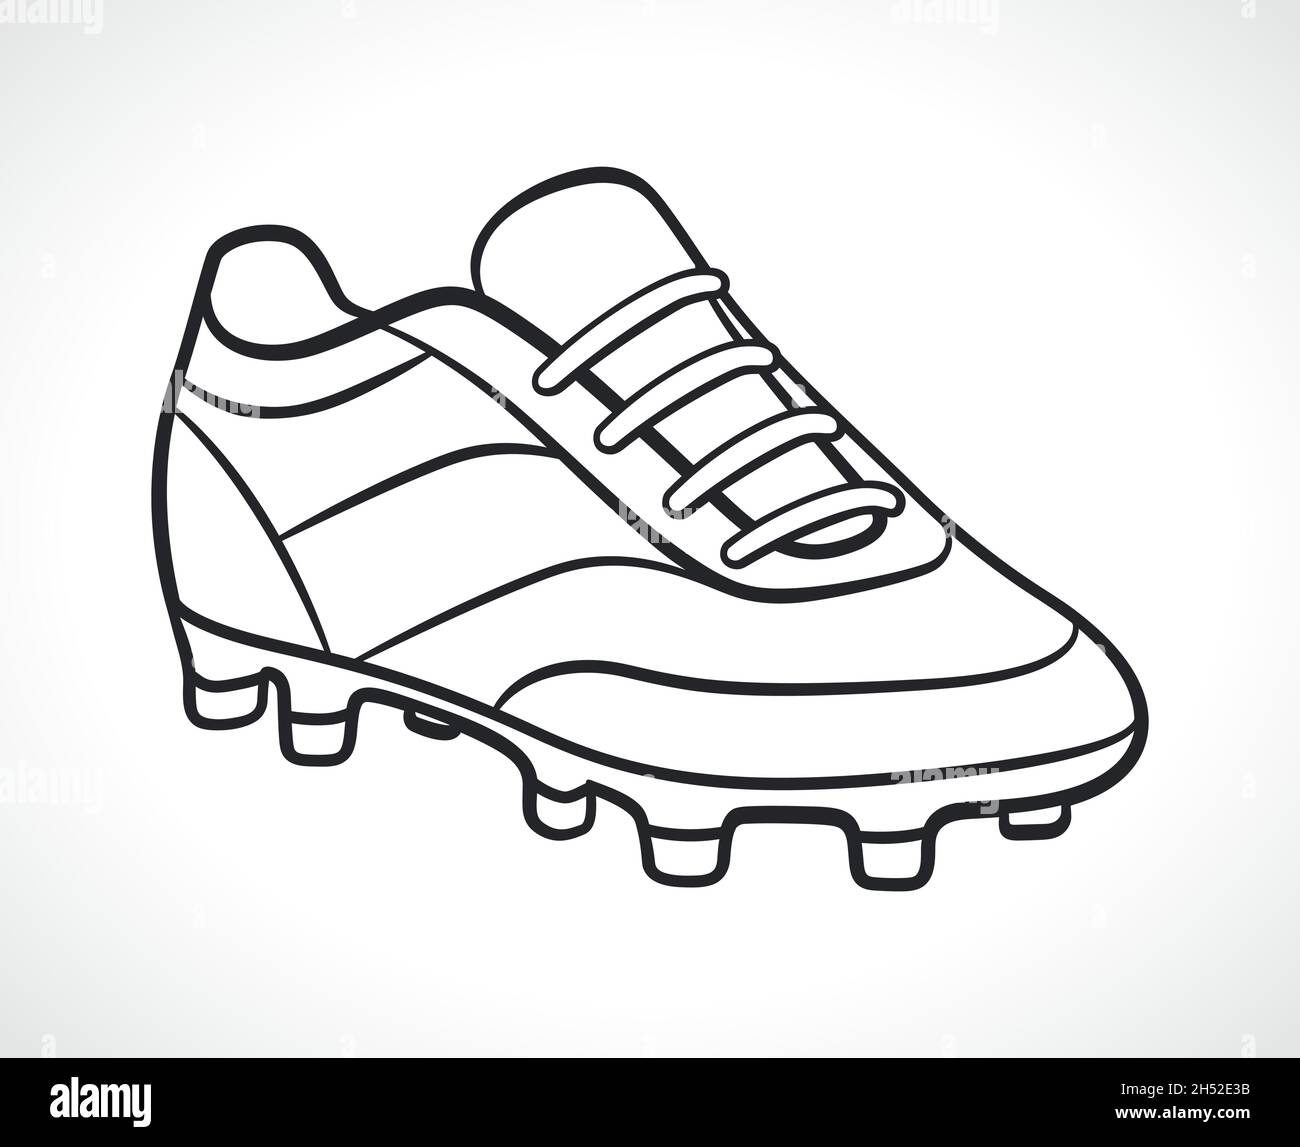 dessin de la chaussure de football en noir et blanc Image Vectorielle Stock  - Alamy